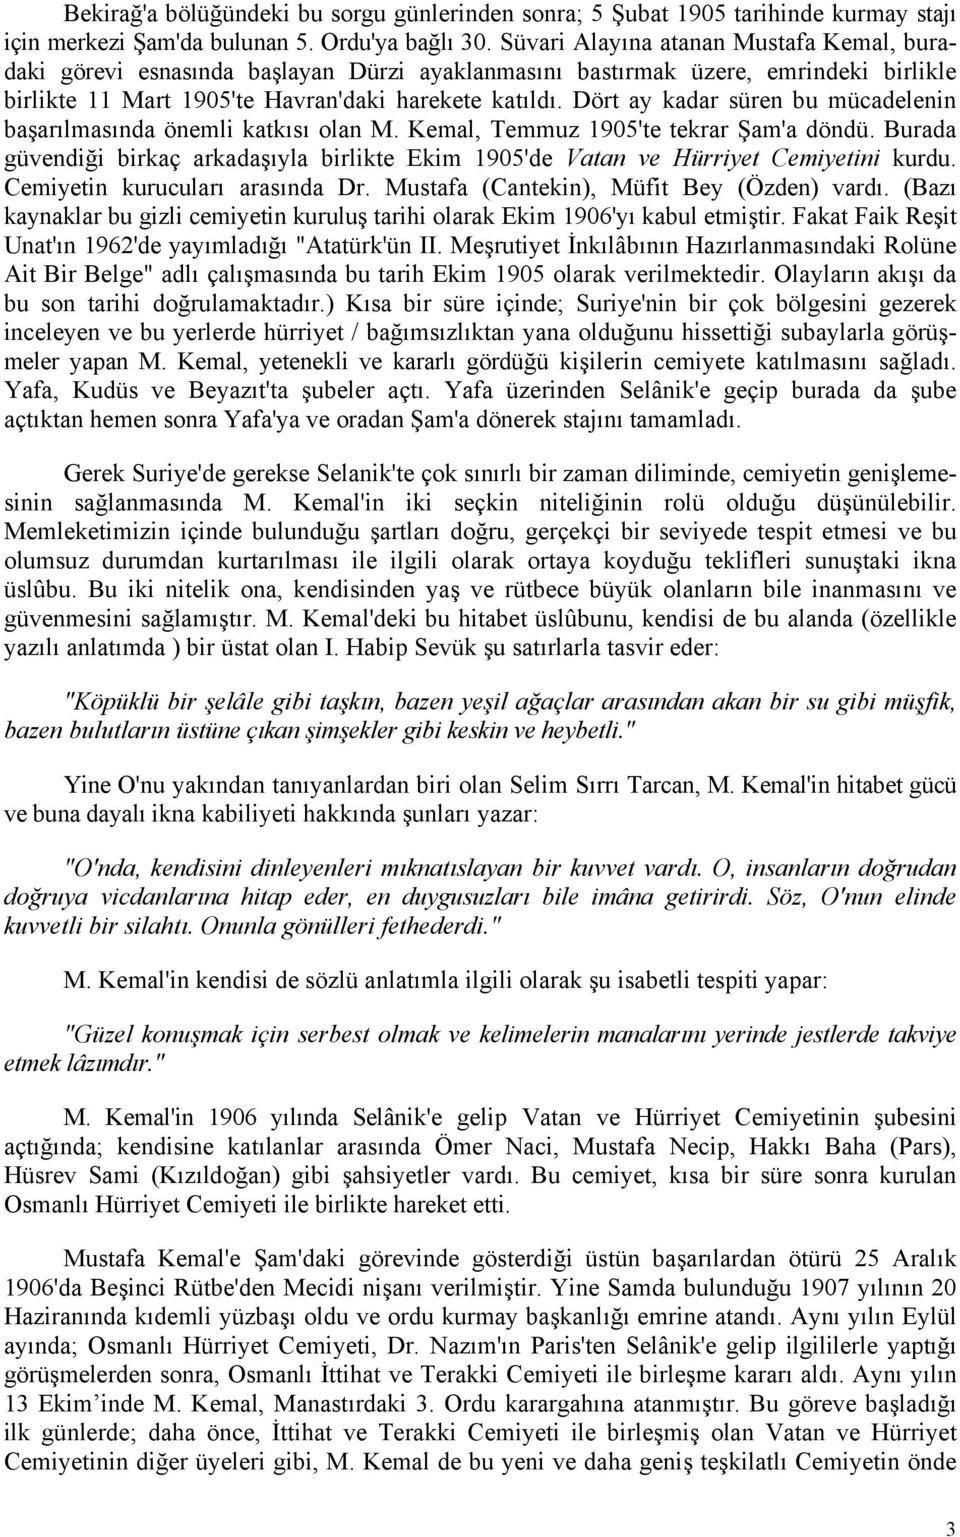 Dört ay kadar süren bu mücadelenin başarılmasında önemli katkısı olan M. Kemal, Temmuz 1905'te tekrar Şam'a döndü.